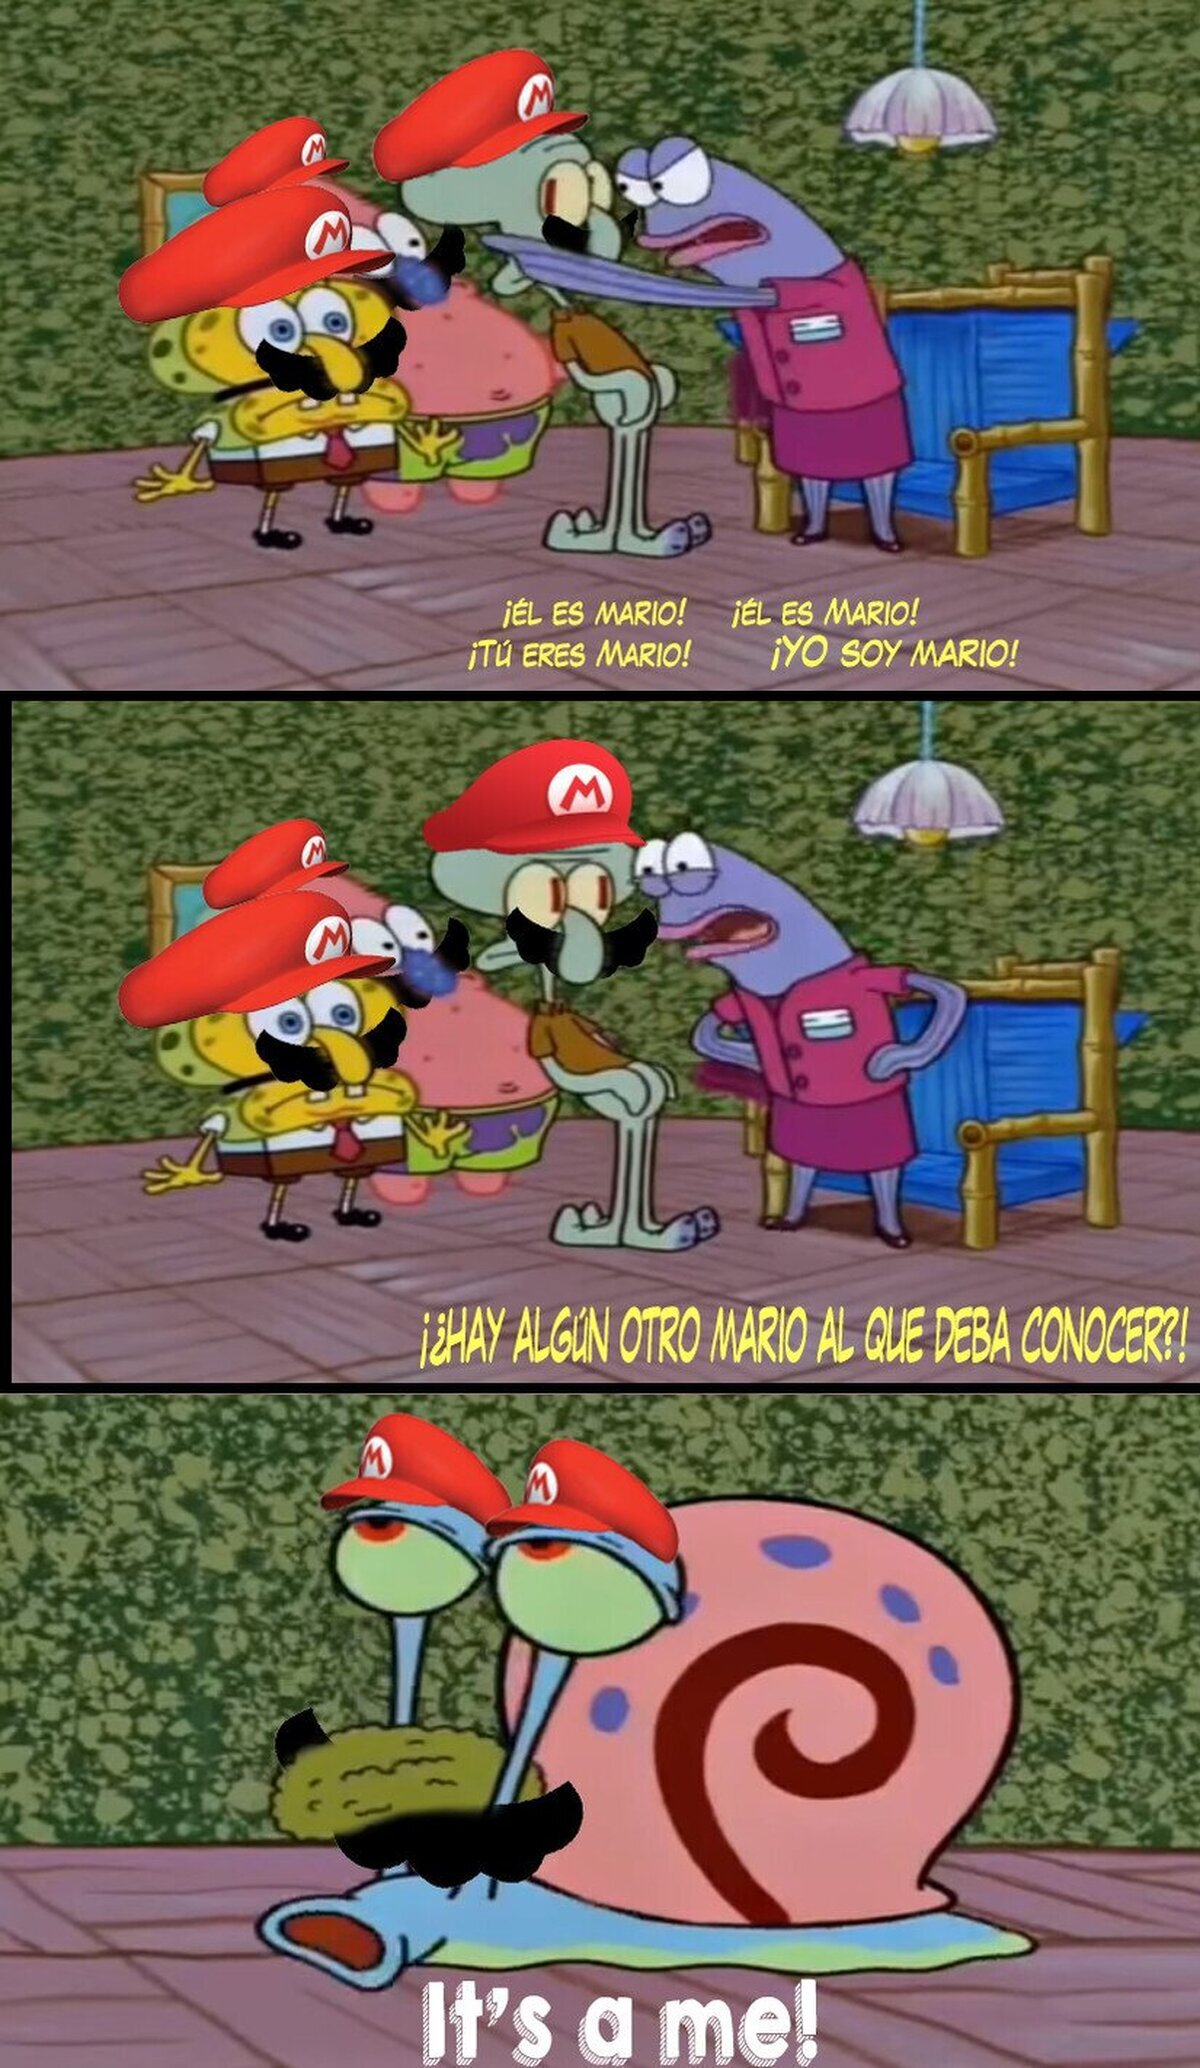 El problema de Mario Odyssey